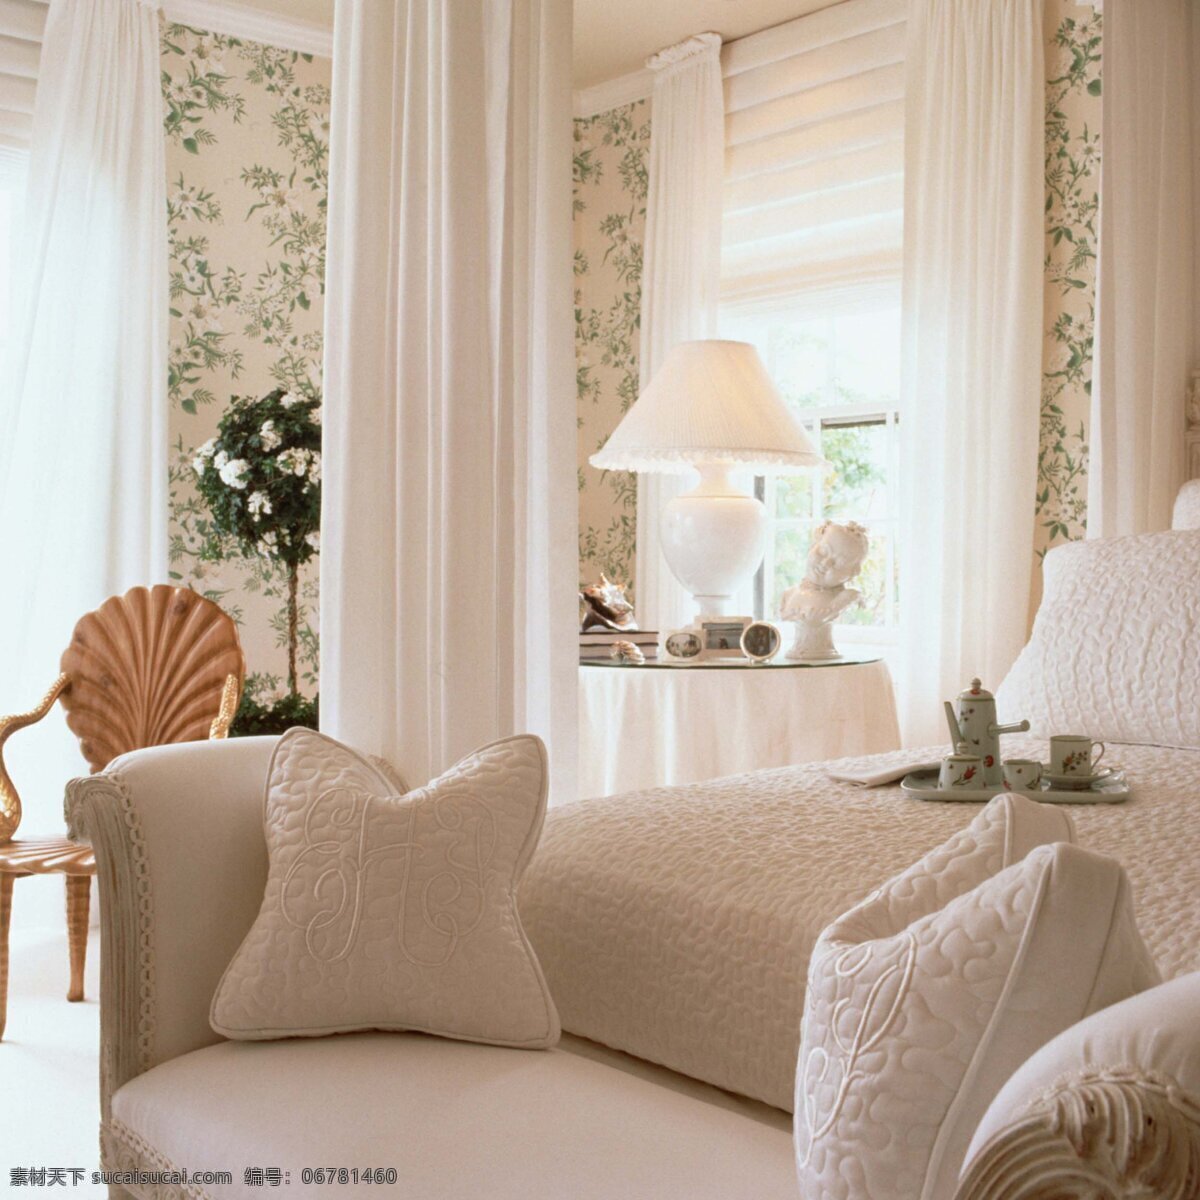 沙发 室内装饰 客厅 欧式 田园 家居装饰素材 室内设计